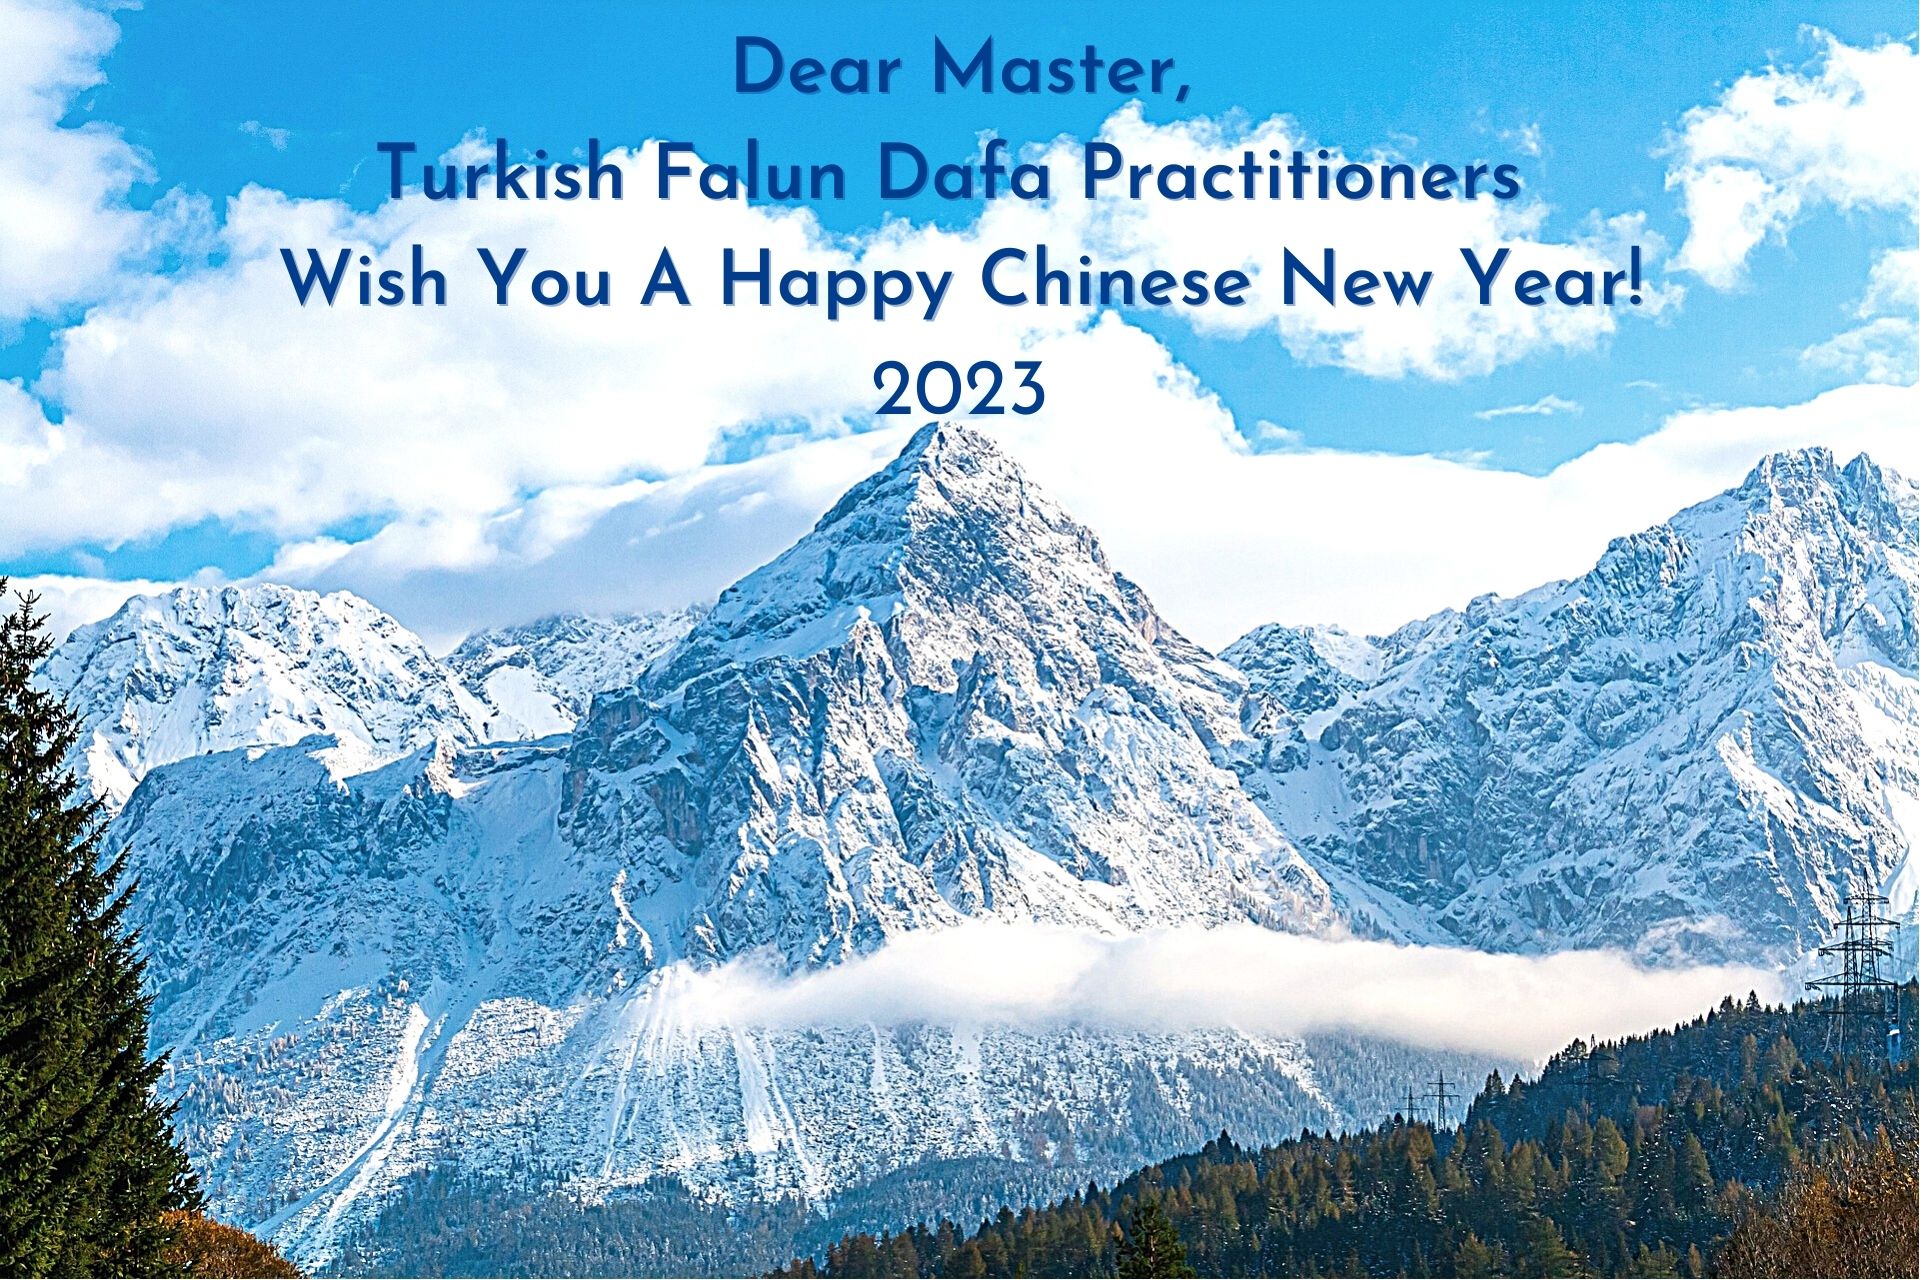 Image for article Türkiye'deki Uygulayıcılar Saygıdeğer Shifu Li'nin 2023 Çin Yeni Yılını Kutluyorlar!